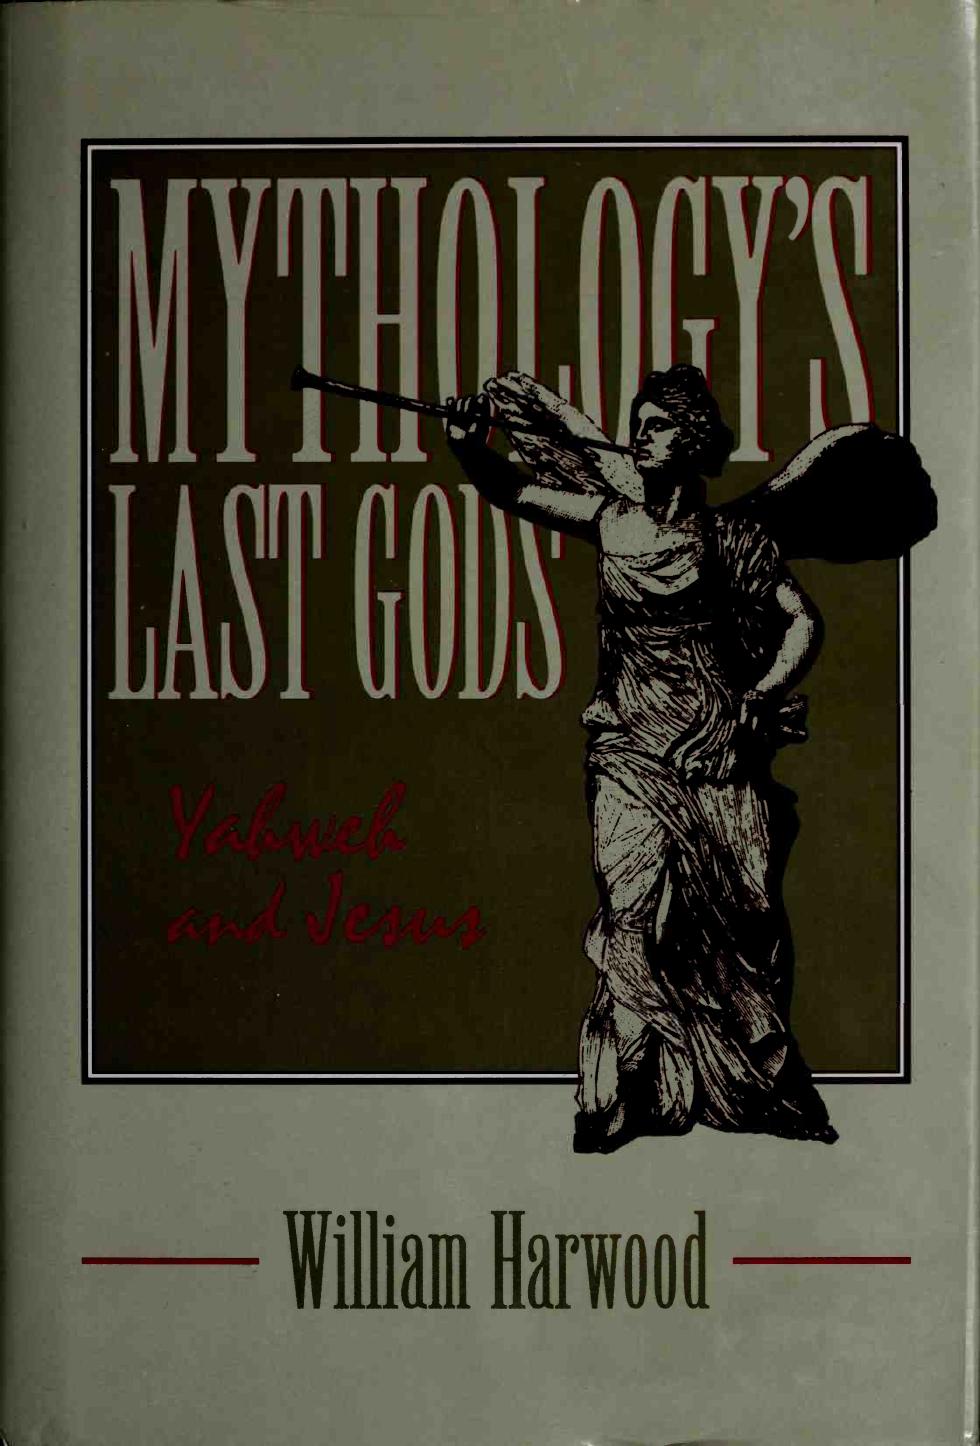 Mythology's last gods by William Harwood